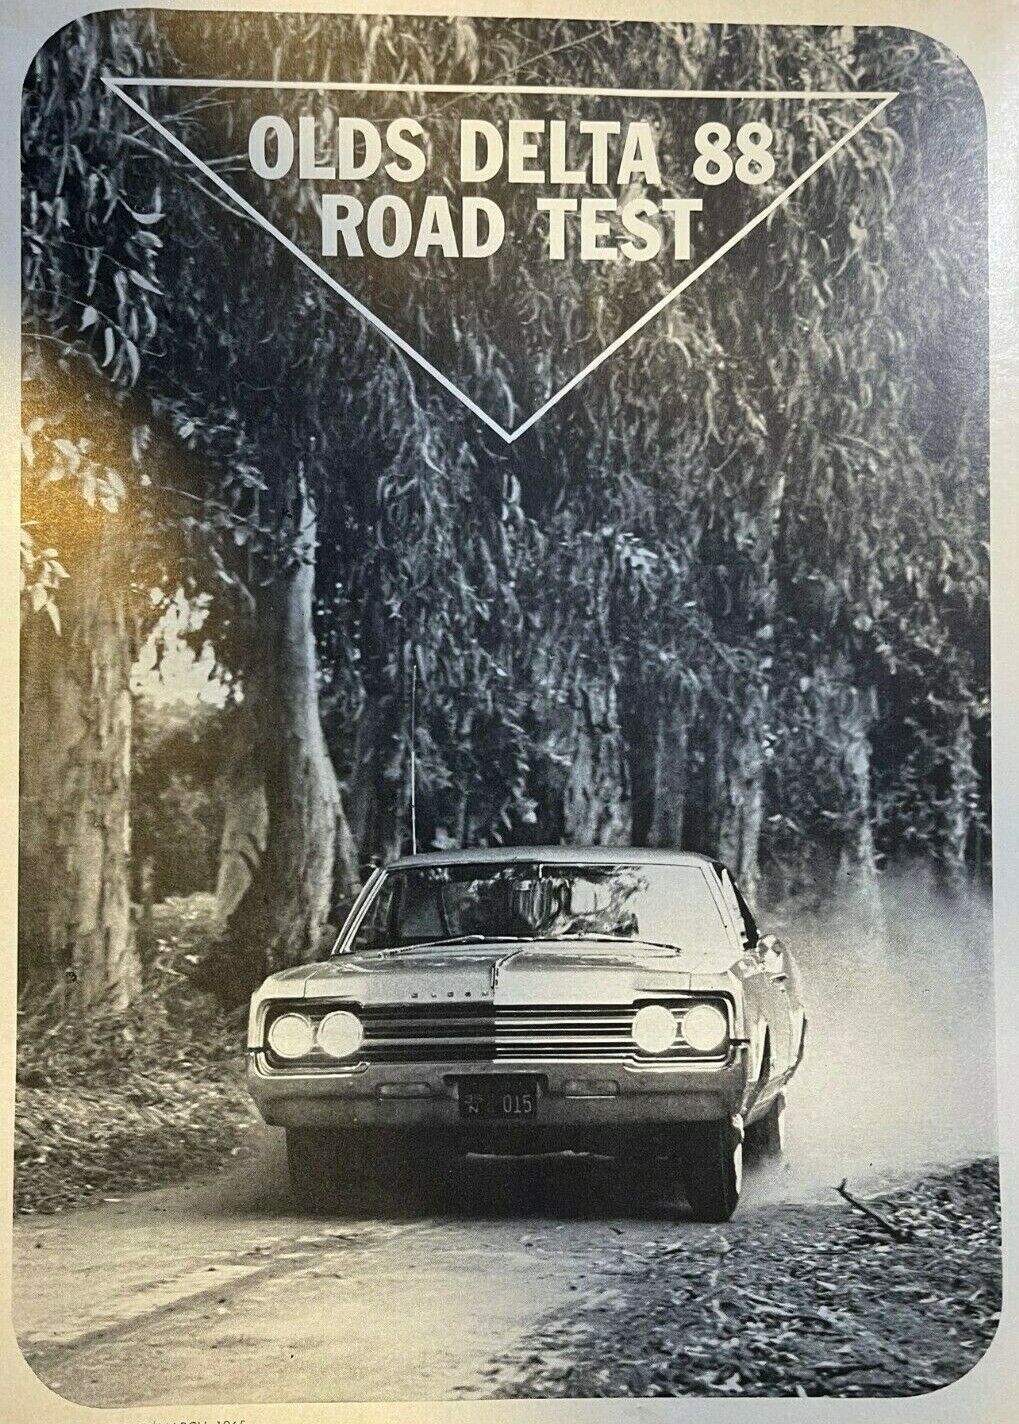 1965 Road Test Oldsmobile Delta 88 Holiday